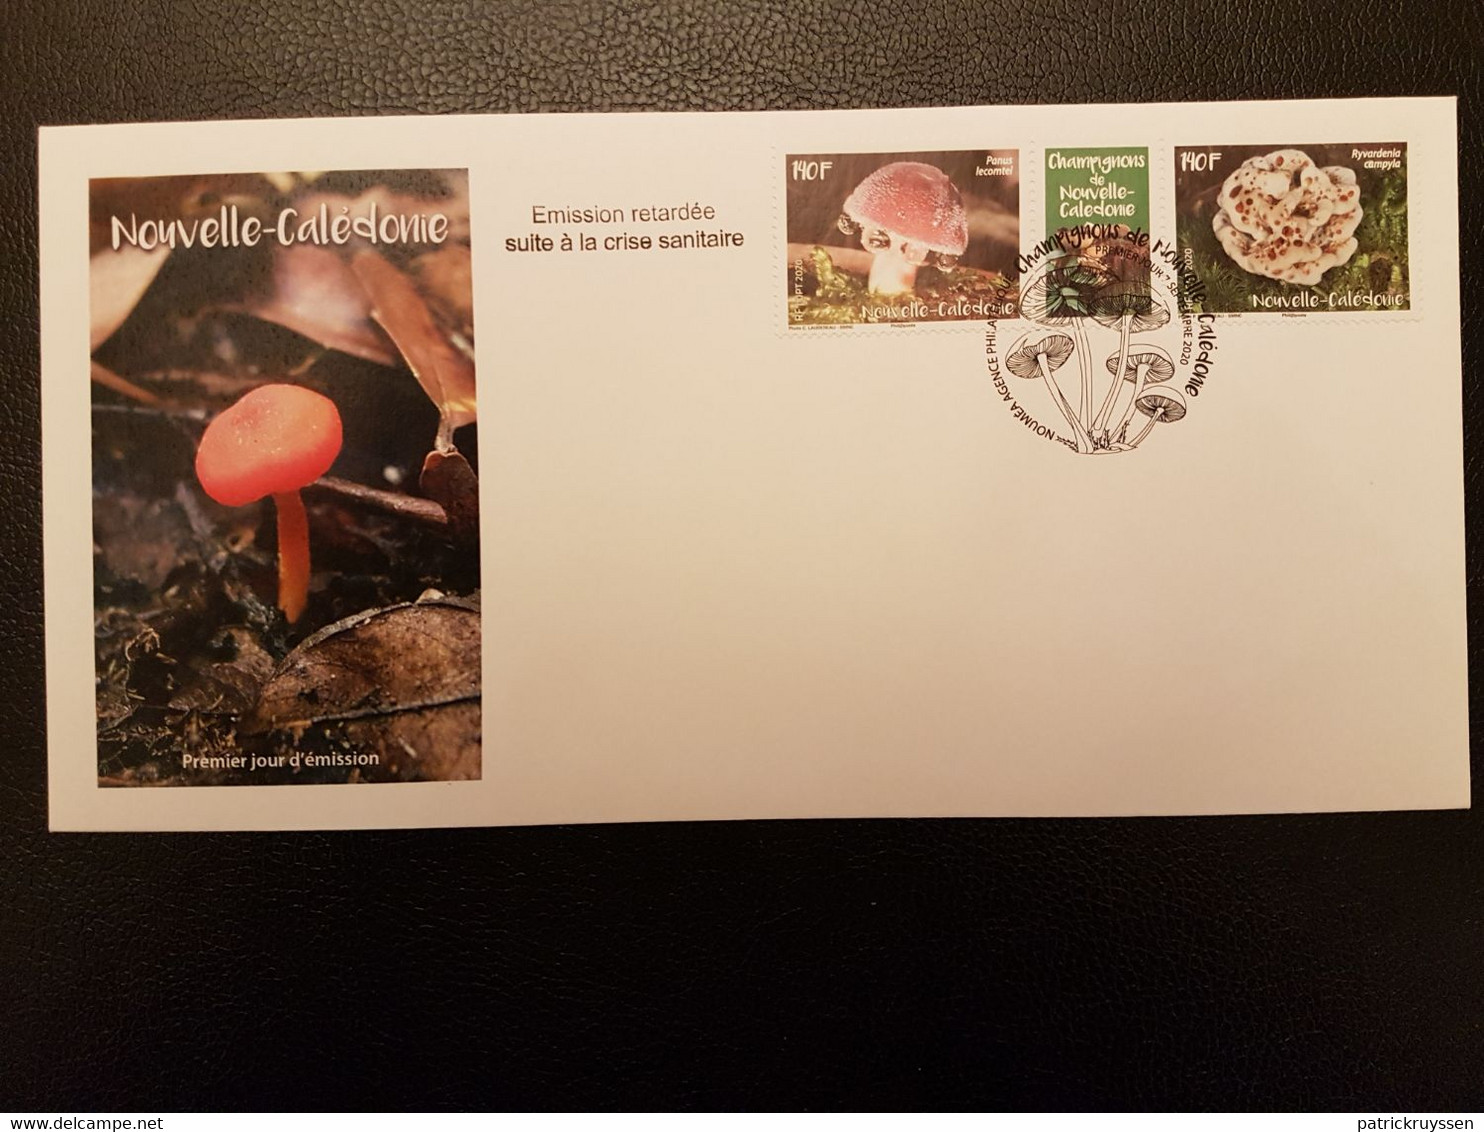 Caledonia 2020 Caledonie Mushroom Champignon Pilz Fungi 2v +label FDC PJ - Unused Stamps